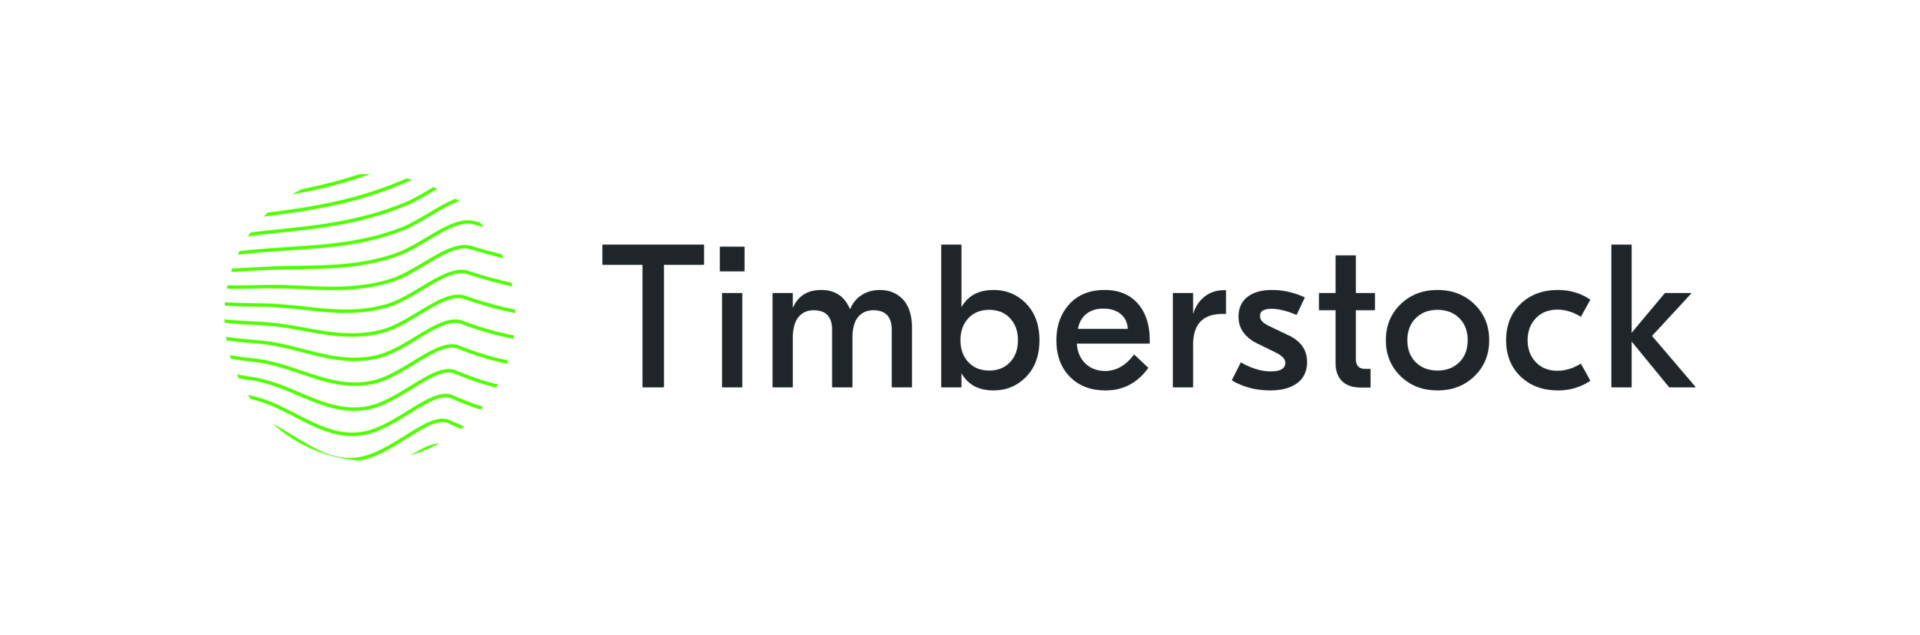 Timberstock logo 01 scaled - Tammiste Personalibüroo | Värbamine - Koolitus - Coaching